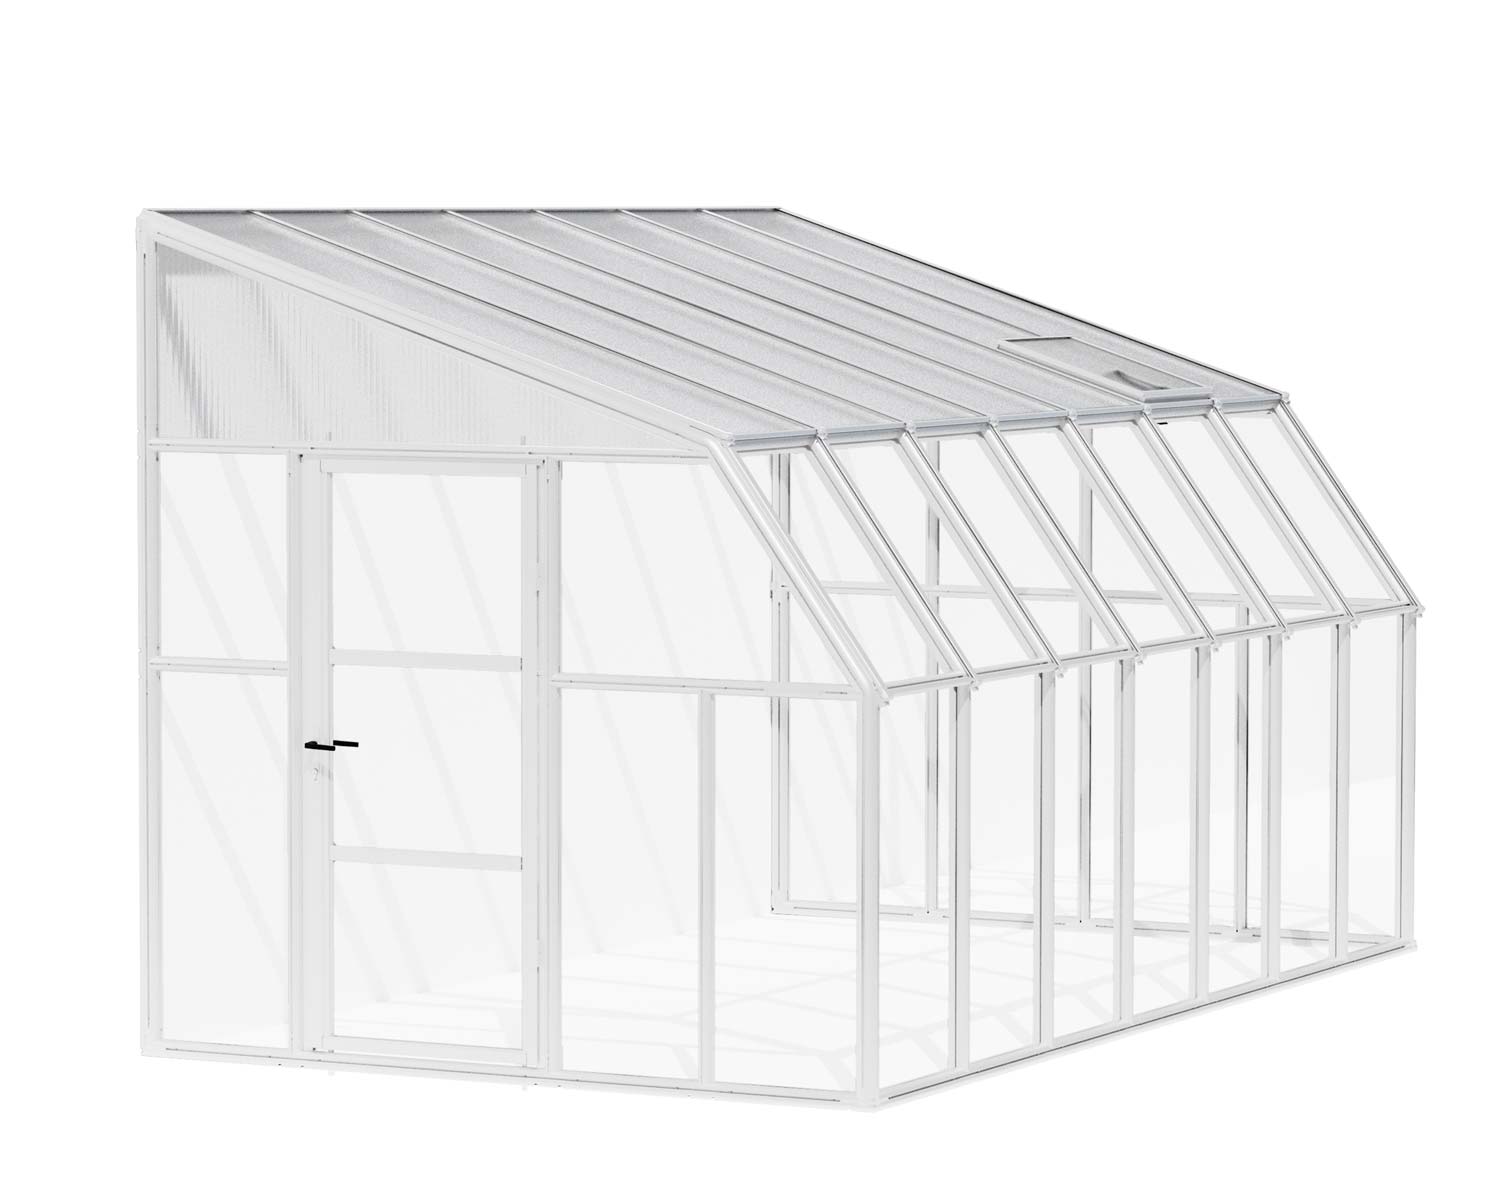 Solarium SunRoom Kit 8 ft. x 14 ft. White Structure & Hybrid Glazing